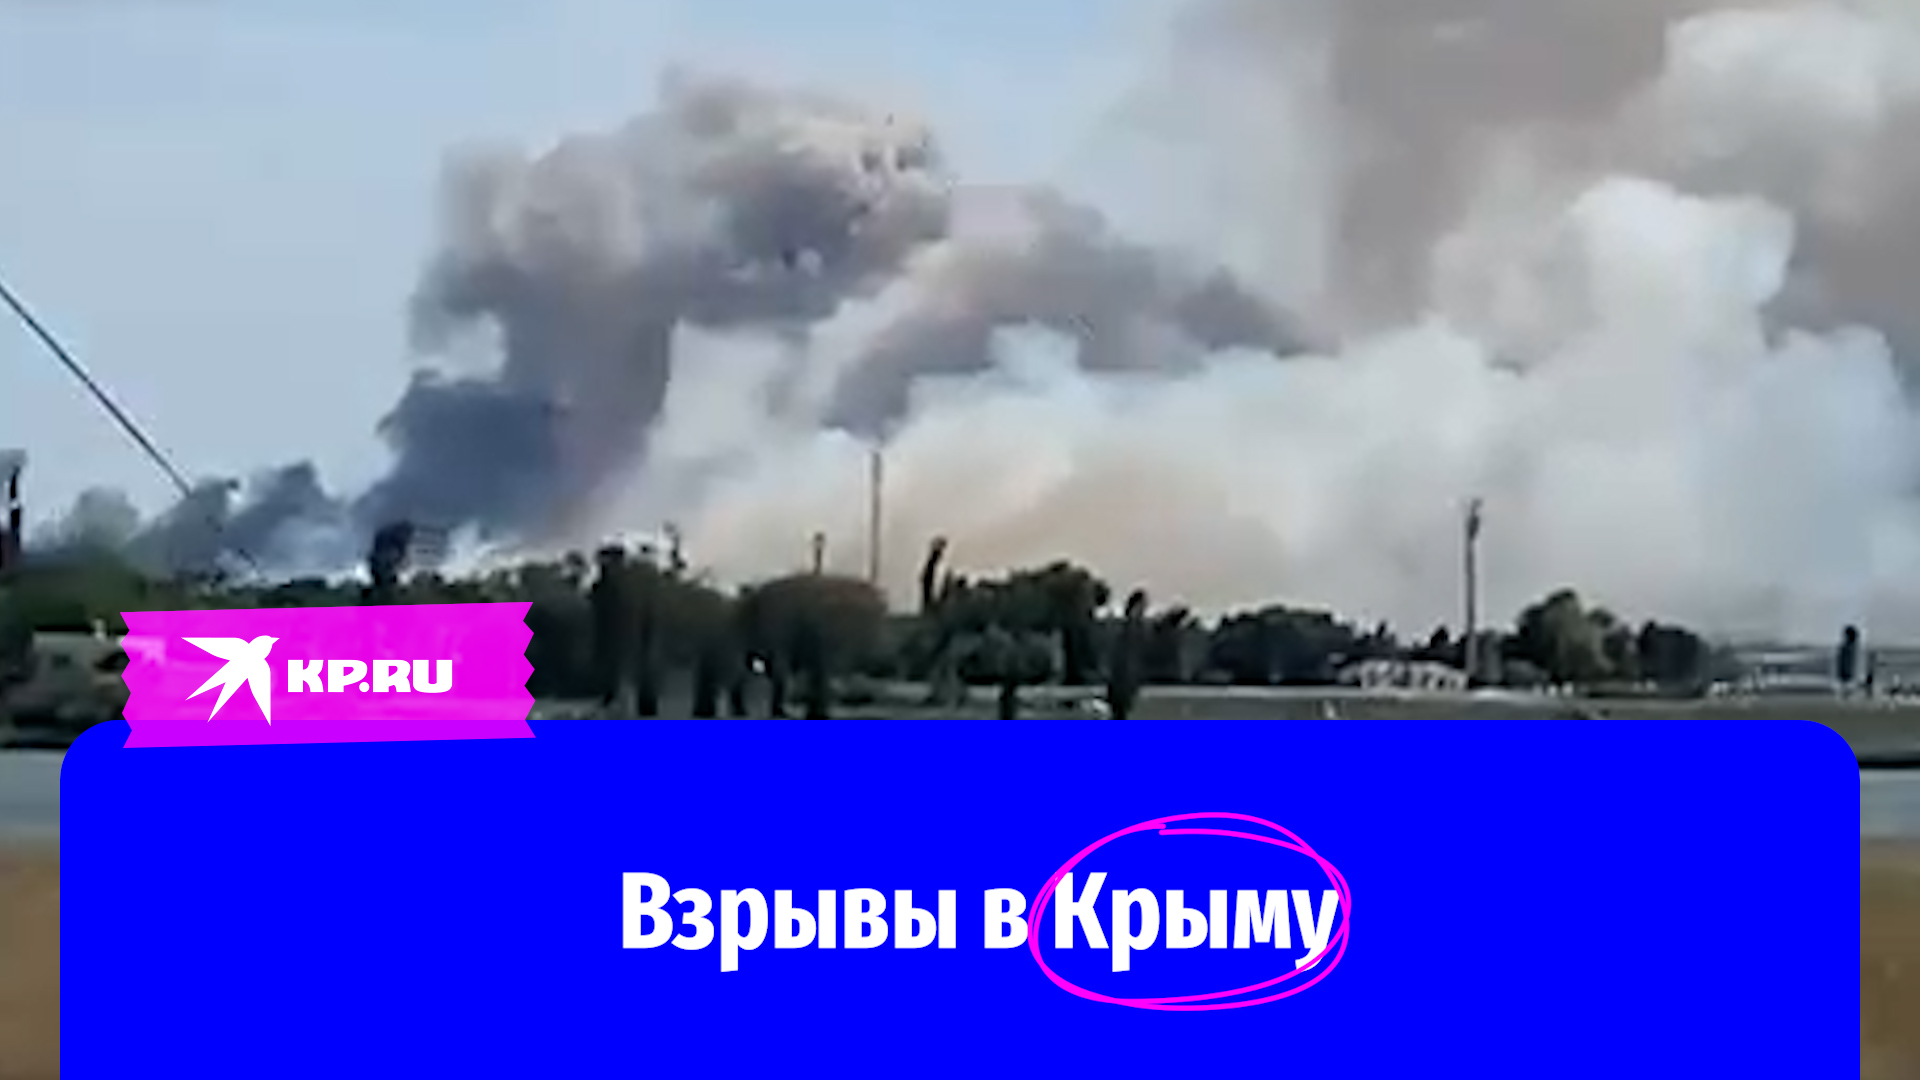 Видео взрывов на аэродроме в Крыму 9 августа 2022 появилось в сети